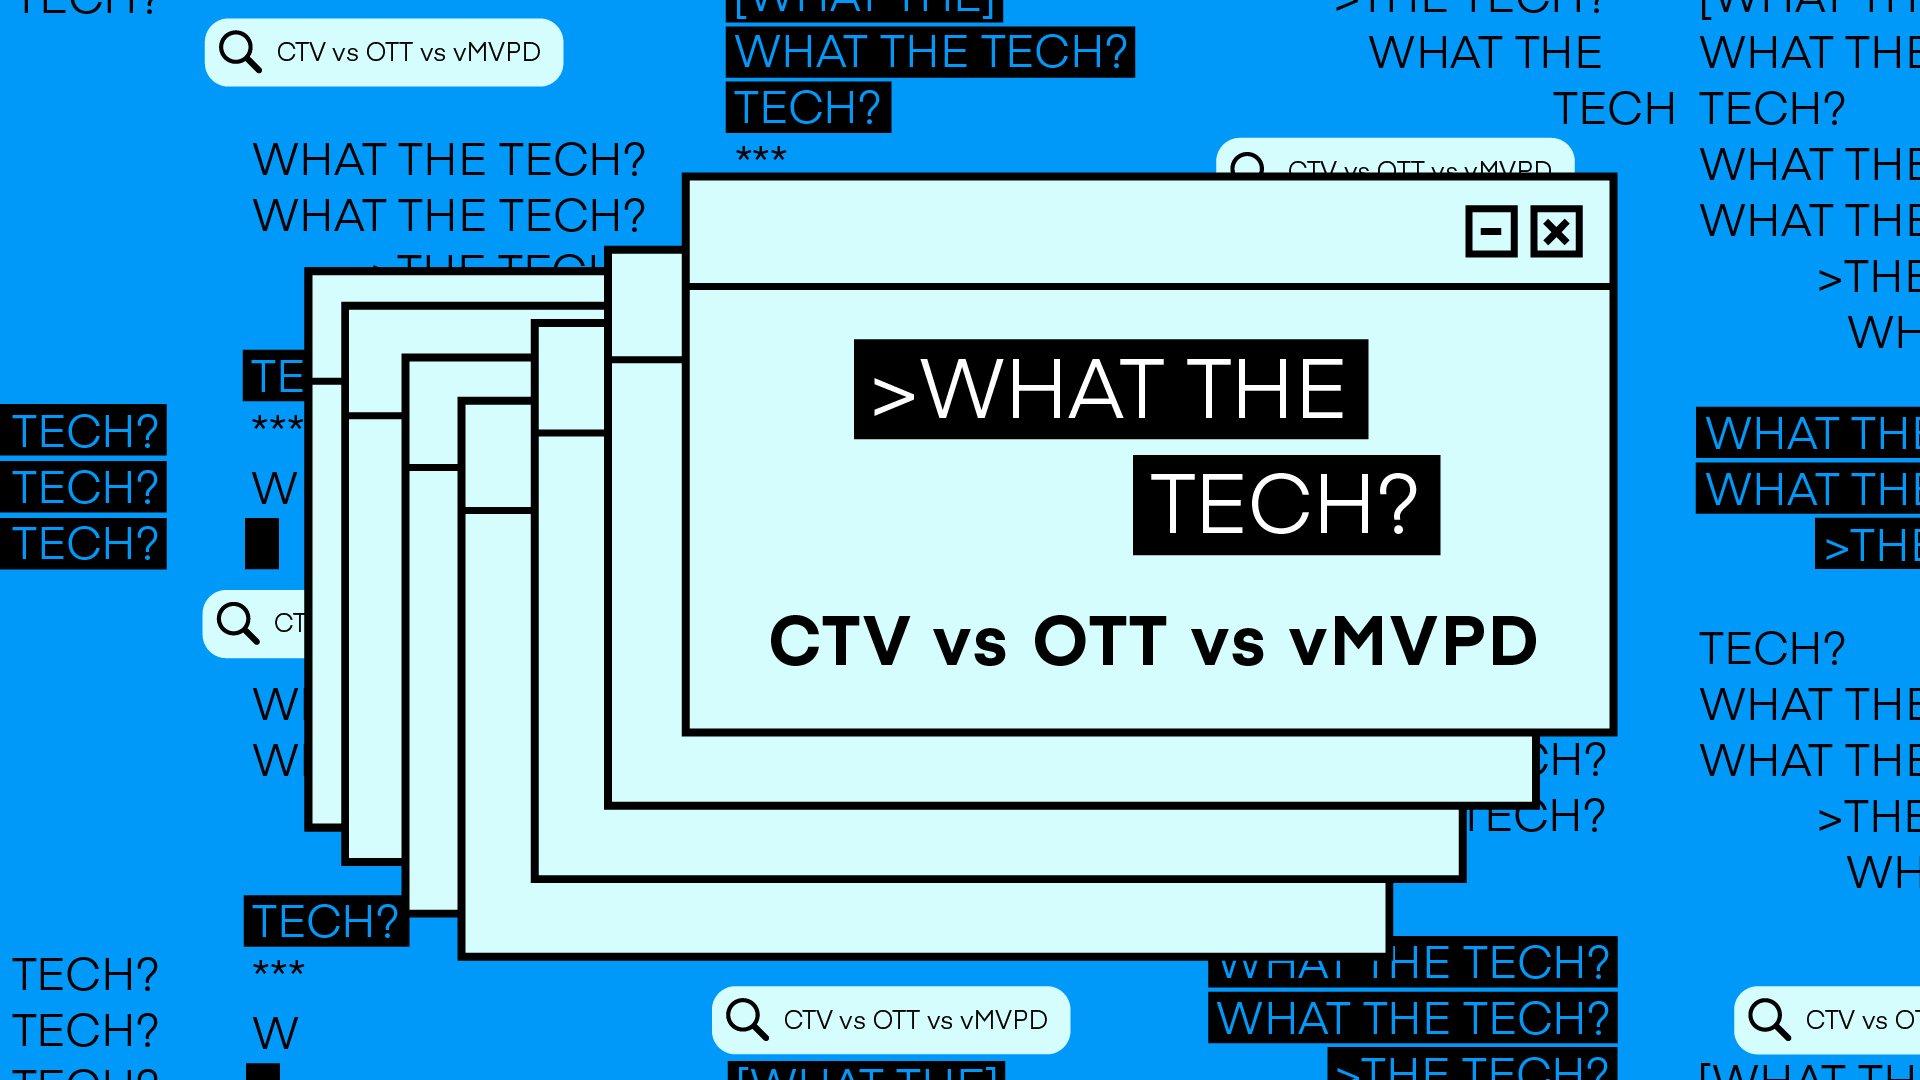 What The Tech is CTV vs. OTT vs. vMVPD?